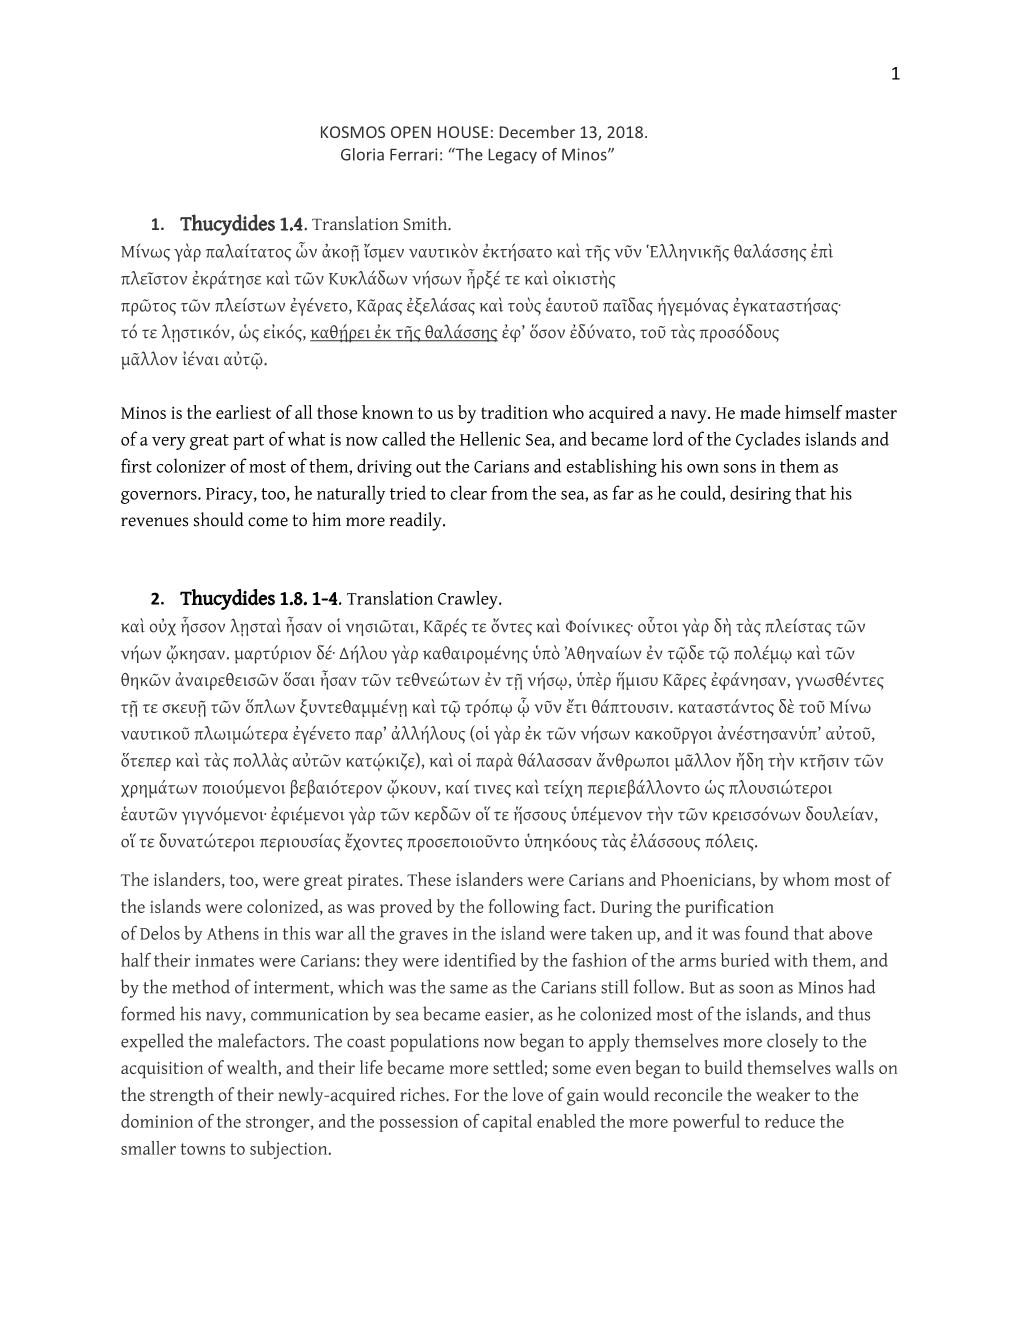 1 2. Thucydides 1.8. 1-4. Translation Crawley